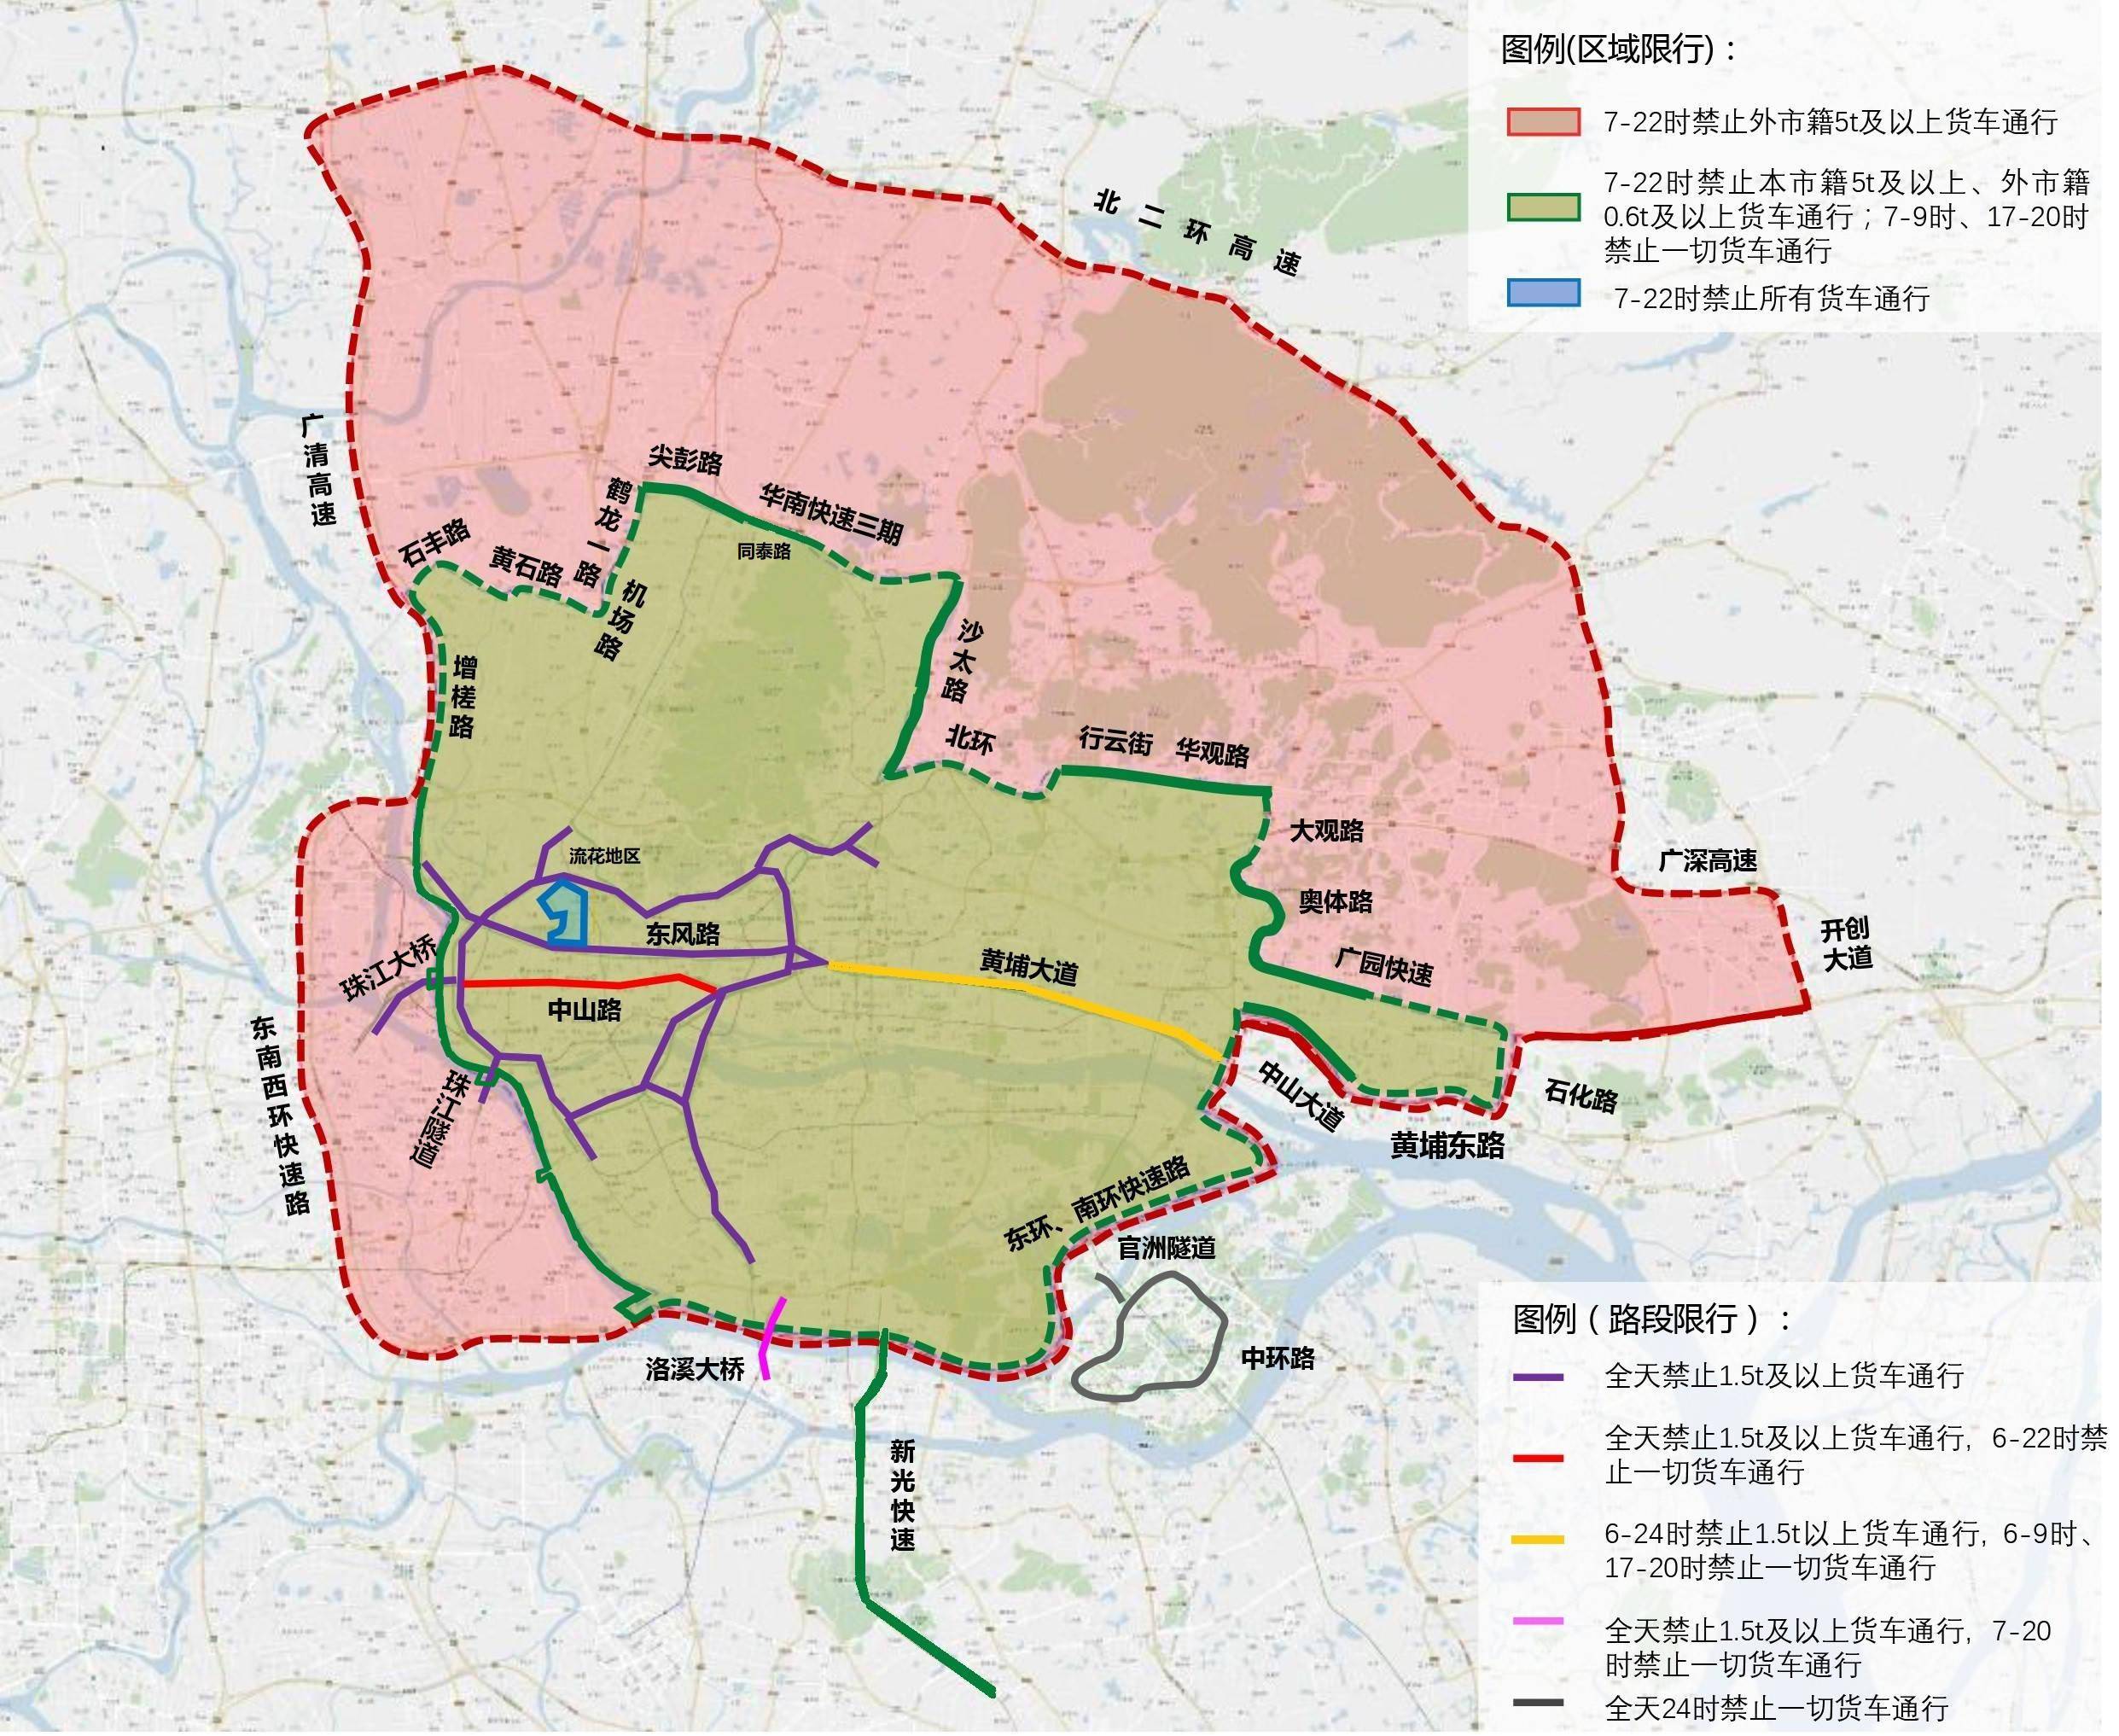 10月1日起,广州货车限行区域有部分调整